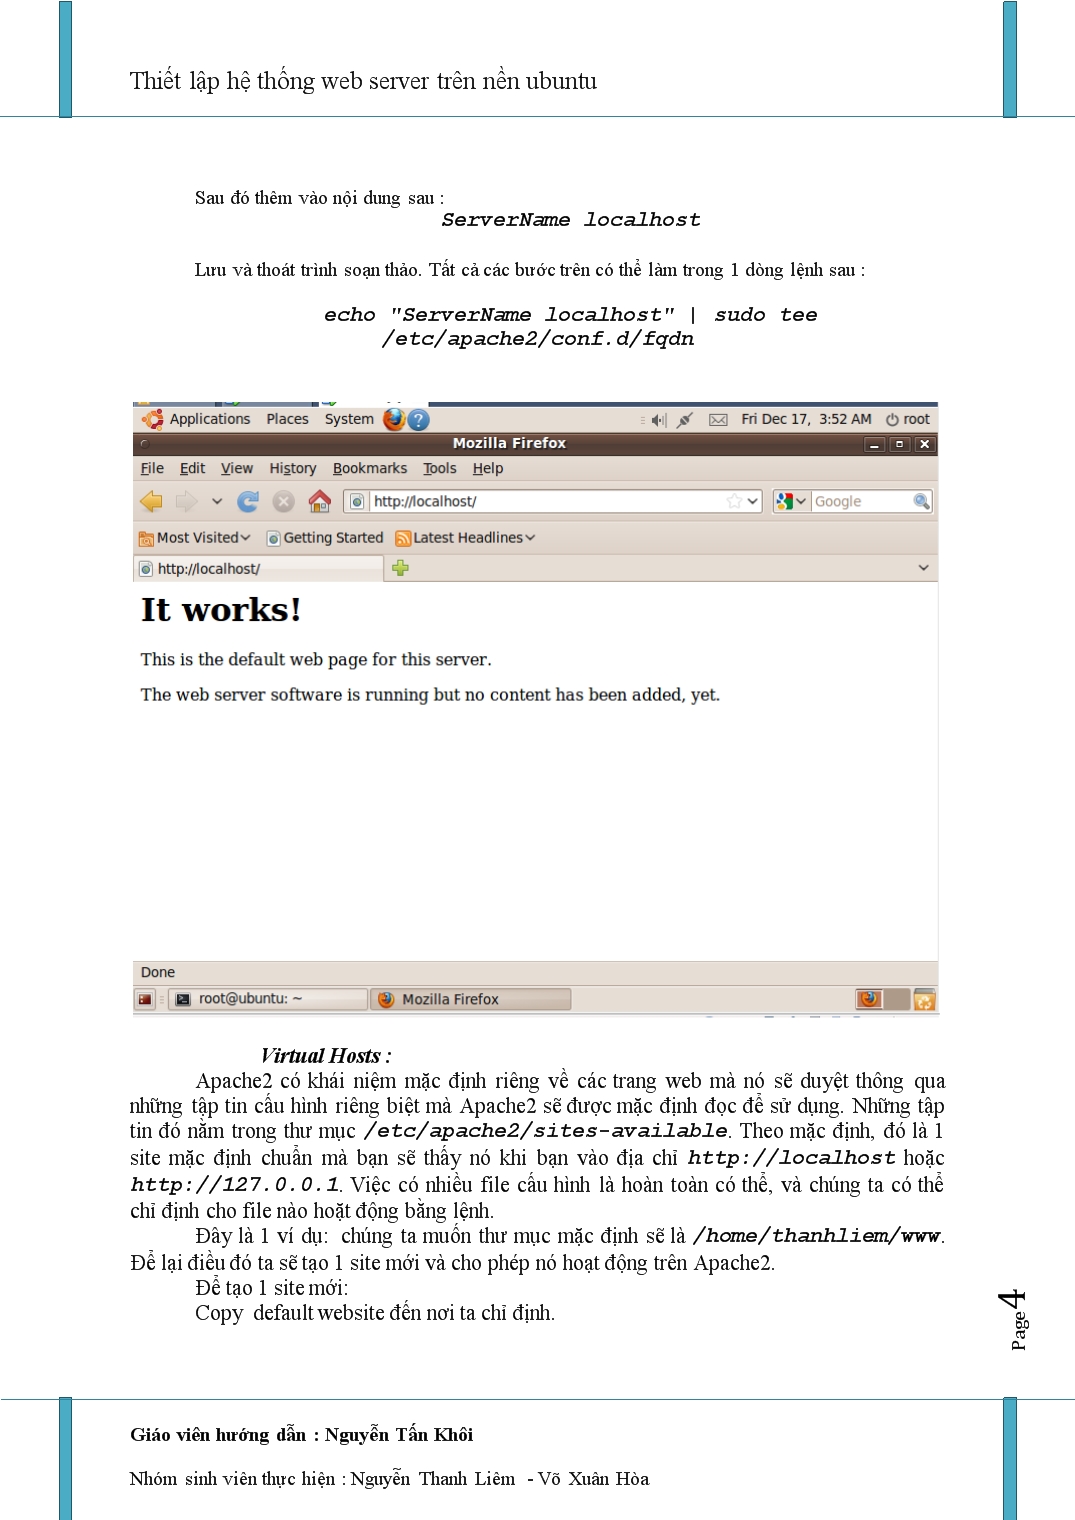 Thiết lập hệ thống web server trên nền ubuntu trang 4